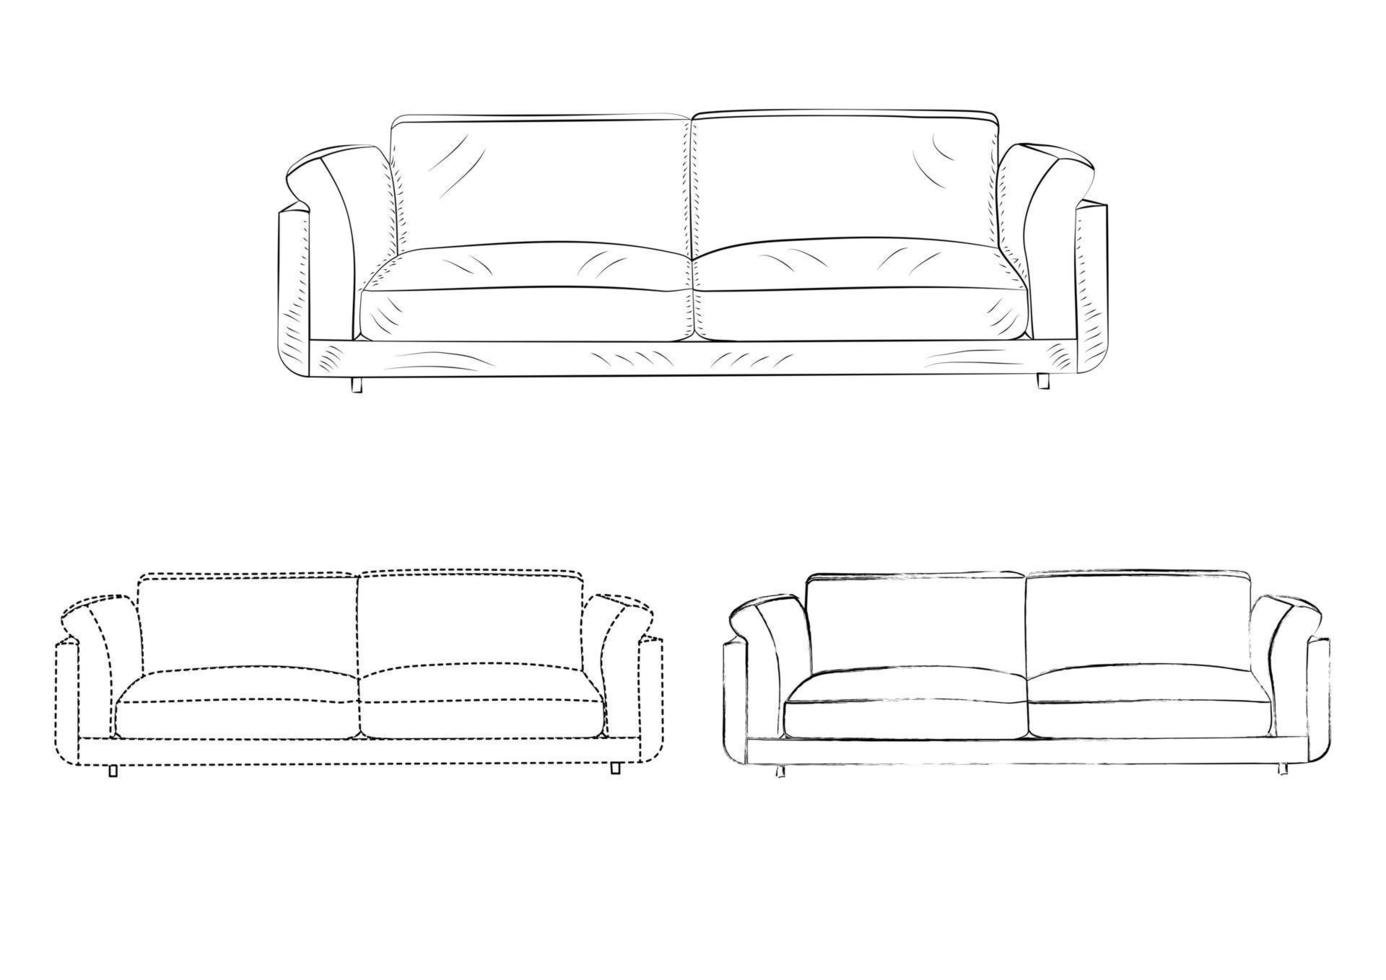 Zeichnungsskizze, Silhouette Umriss Sofa, Couch, Couch, Tagesbett, Chaiselongue, Ottomane. Linienstil und Pinselstriche vektor